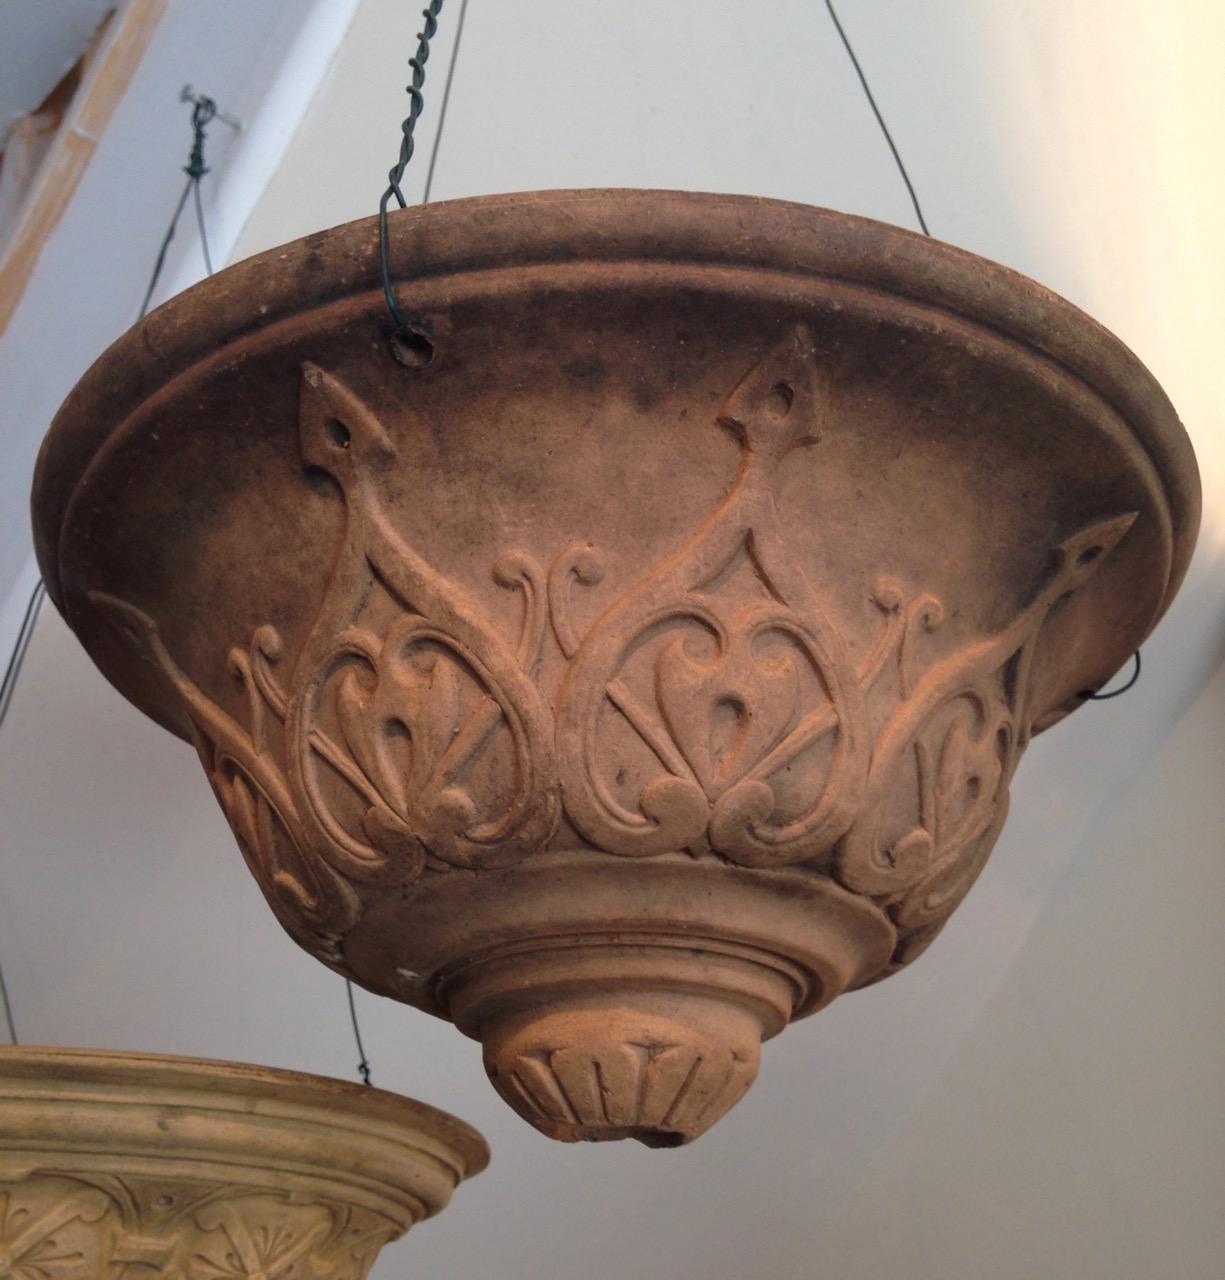  Terracotta  Hanging  Pot  Accessories Lighting